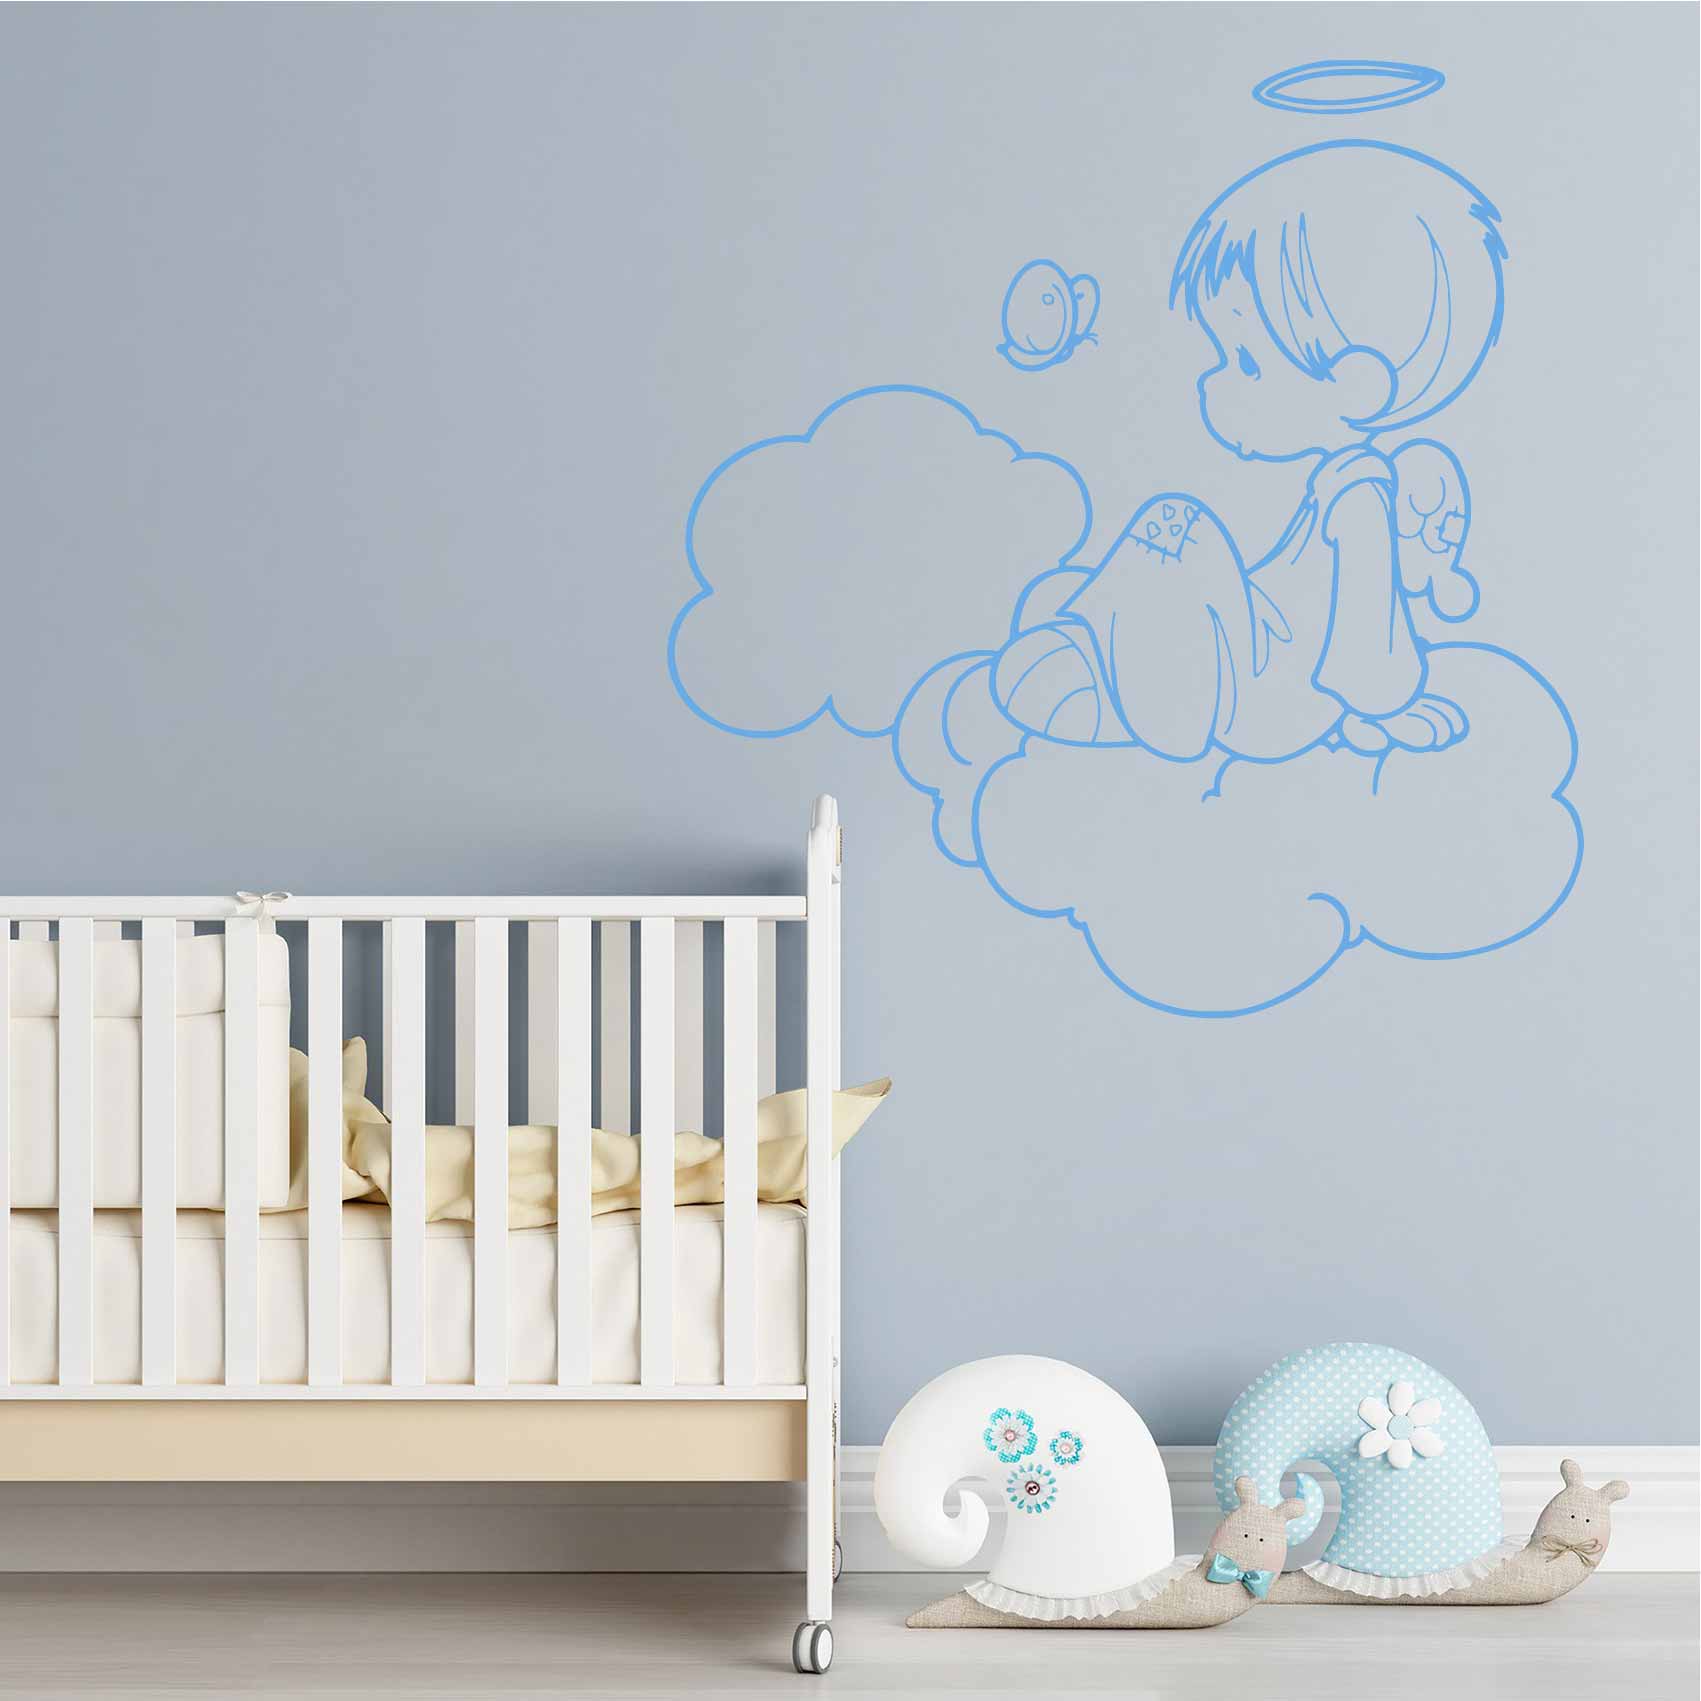 Stickers bébé : Comment décorer entièrement la chambre ?